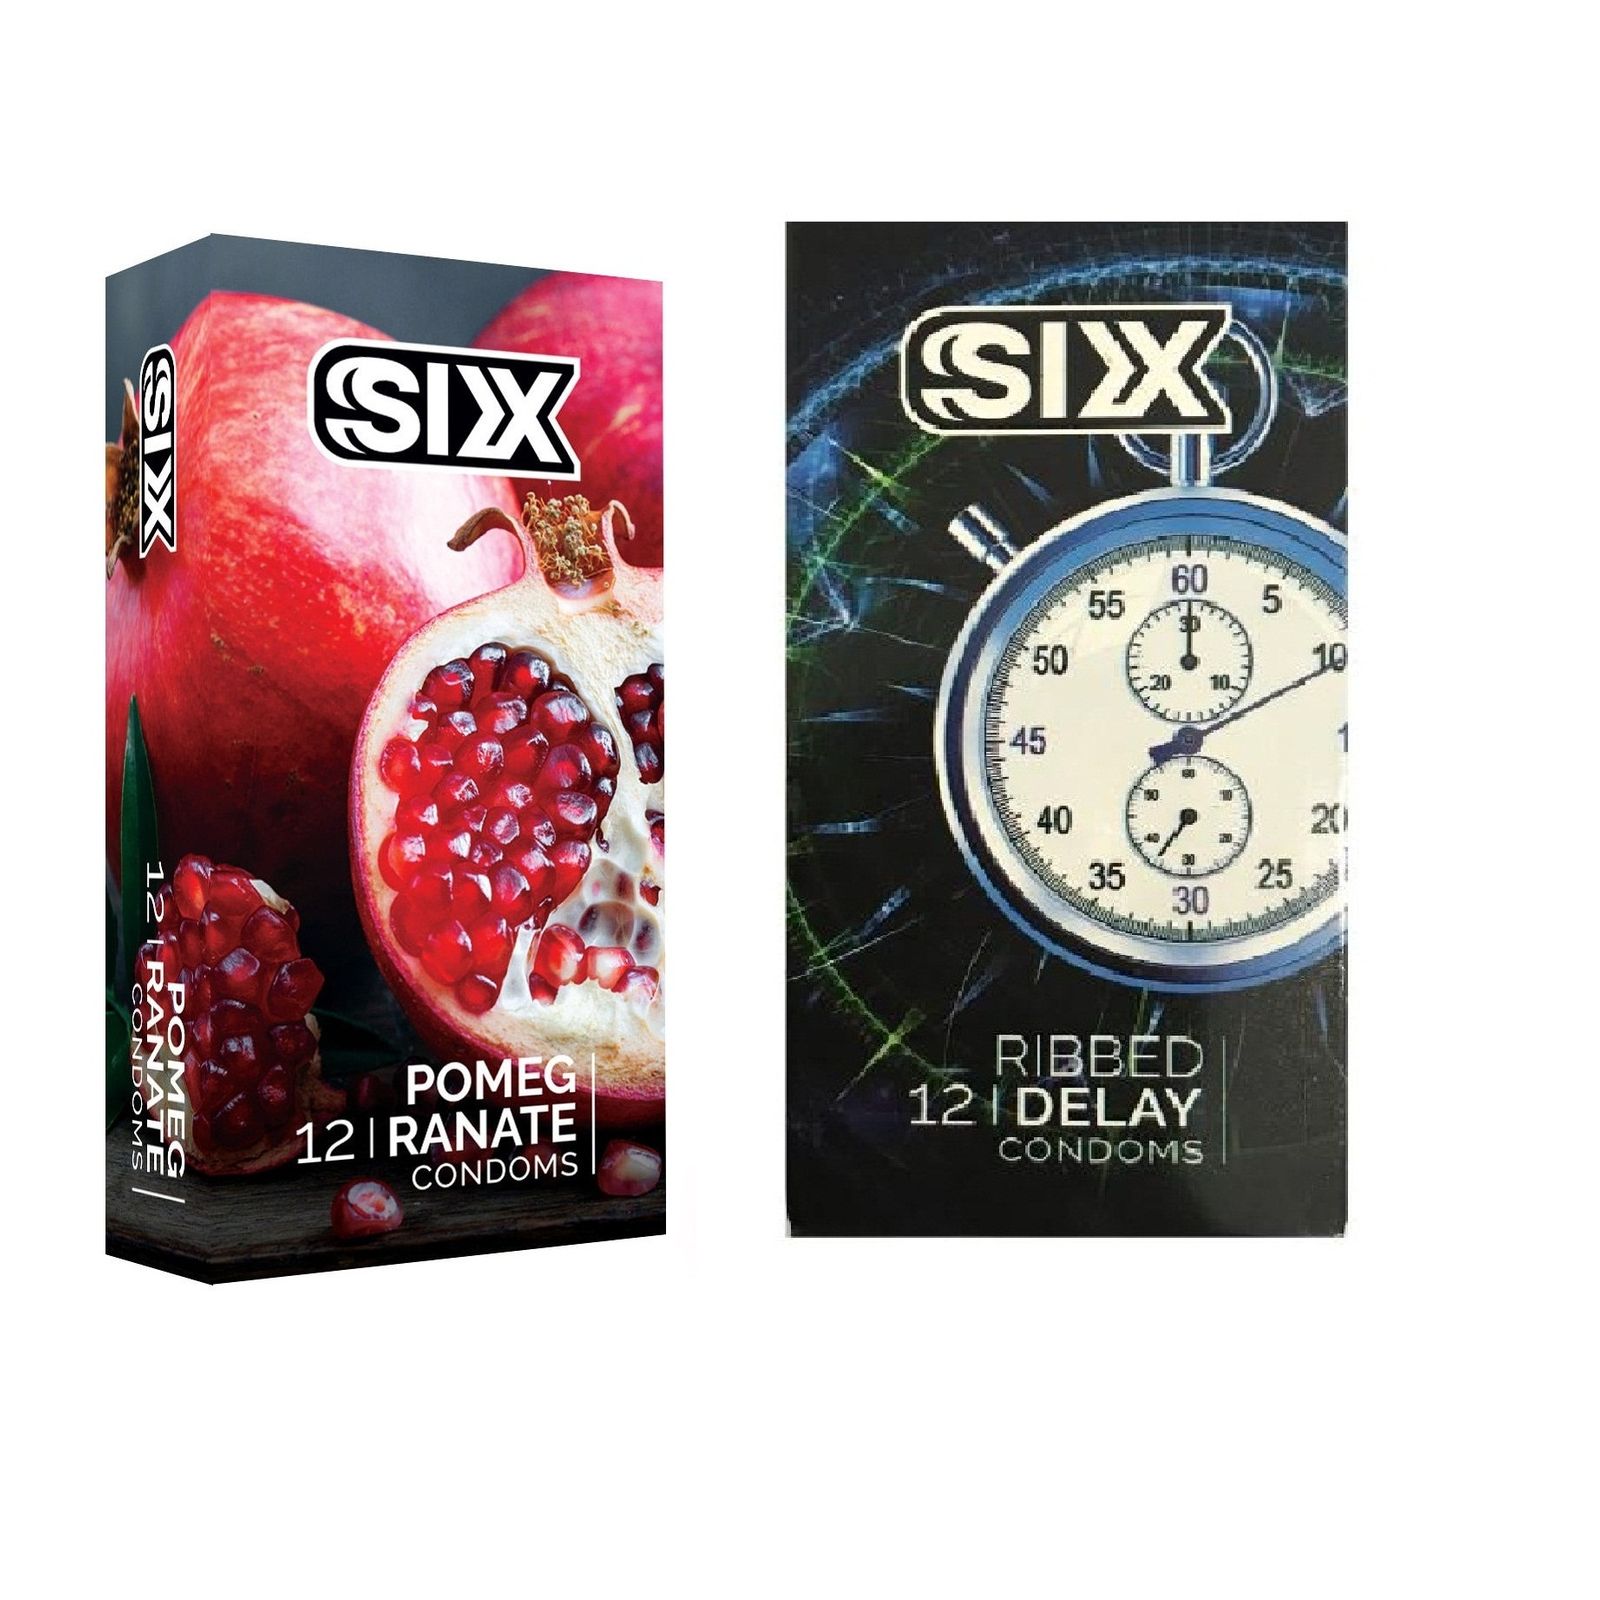 کاندوم سیکس مدل Pomegranate بسته 12 عددی به همراه کاندوم سیکس مدل Ribbed Delay بسته 12 عددی -  - 2